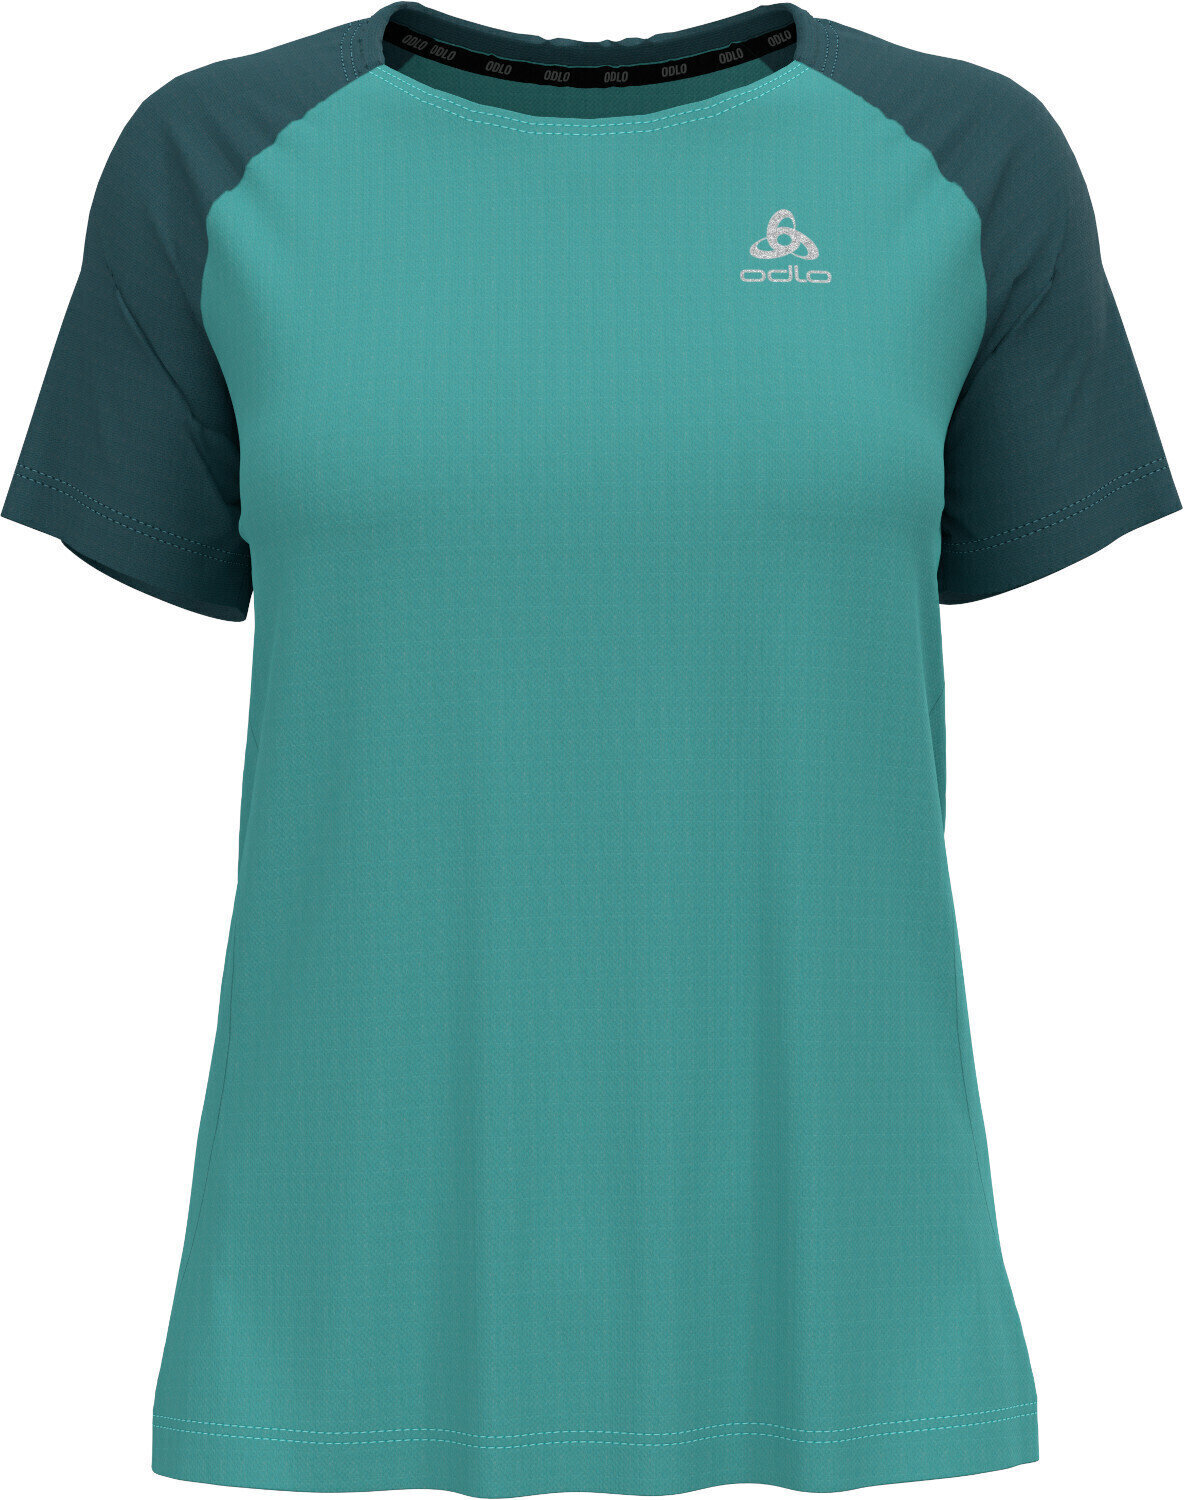 Koszulka do biegania z krótkim rękawem
 Odlo Essential T-Shirt Jaded/Balsam S Koszulka do biegania z krótkim rękawem